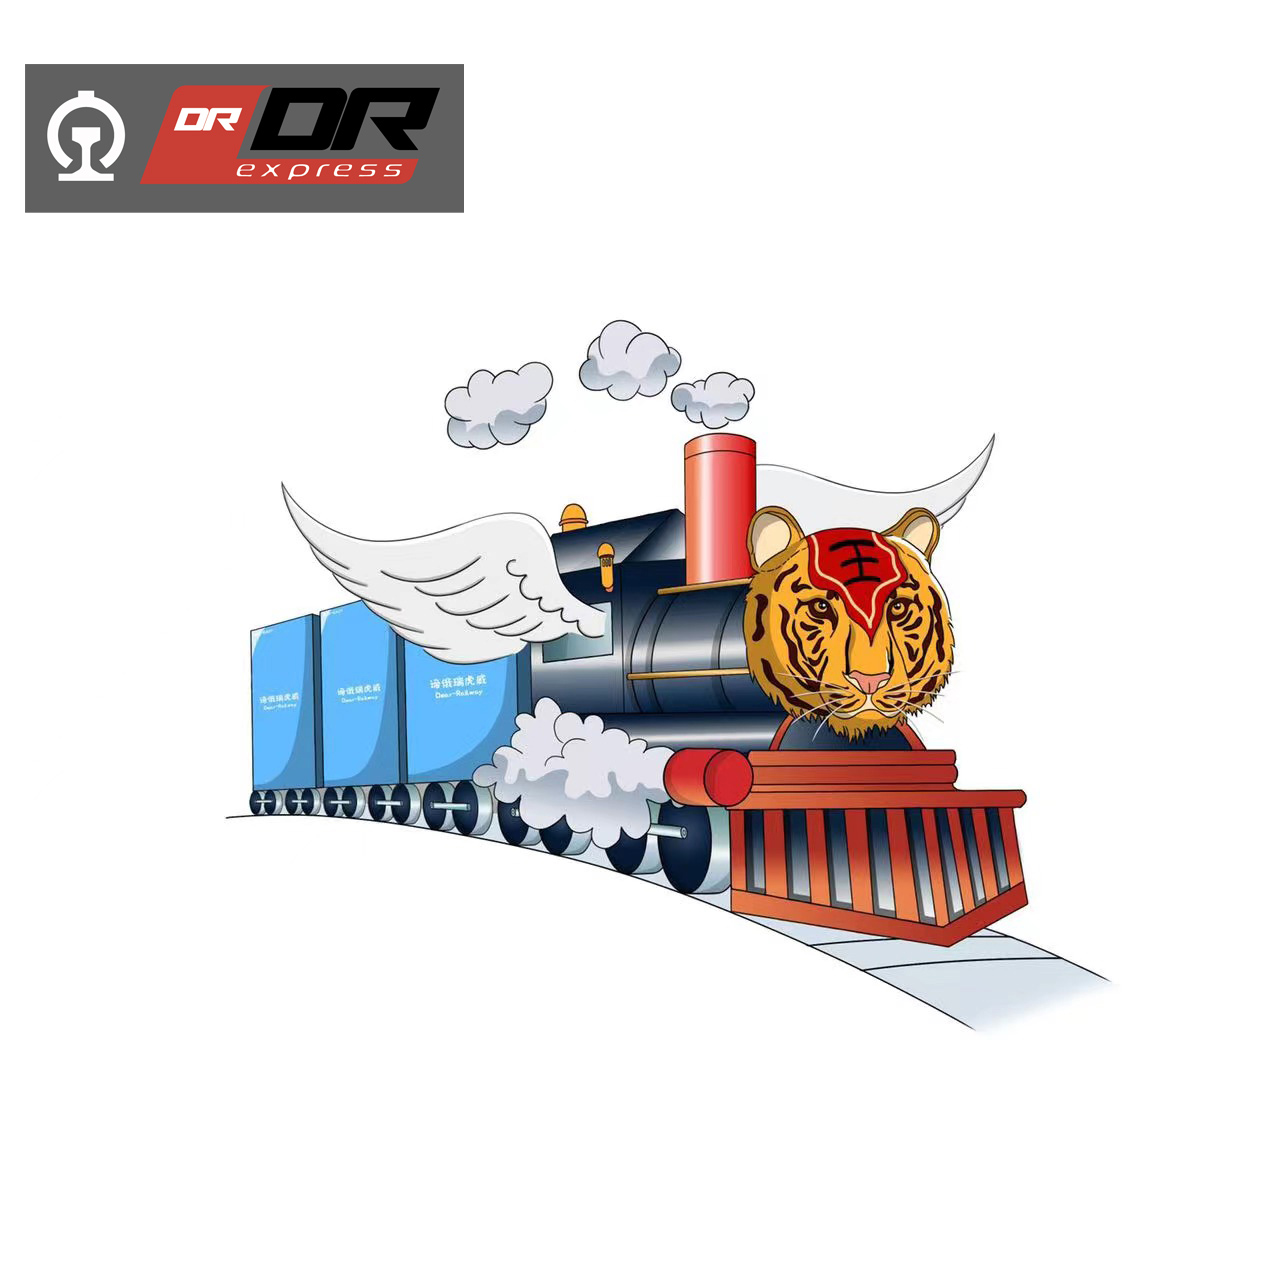 Machine de la Chine vers la Russie par chemin de fer